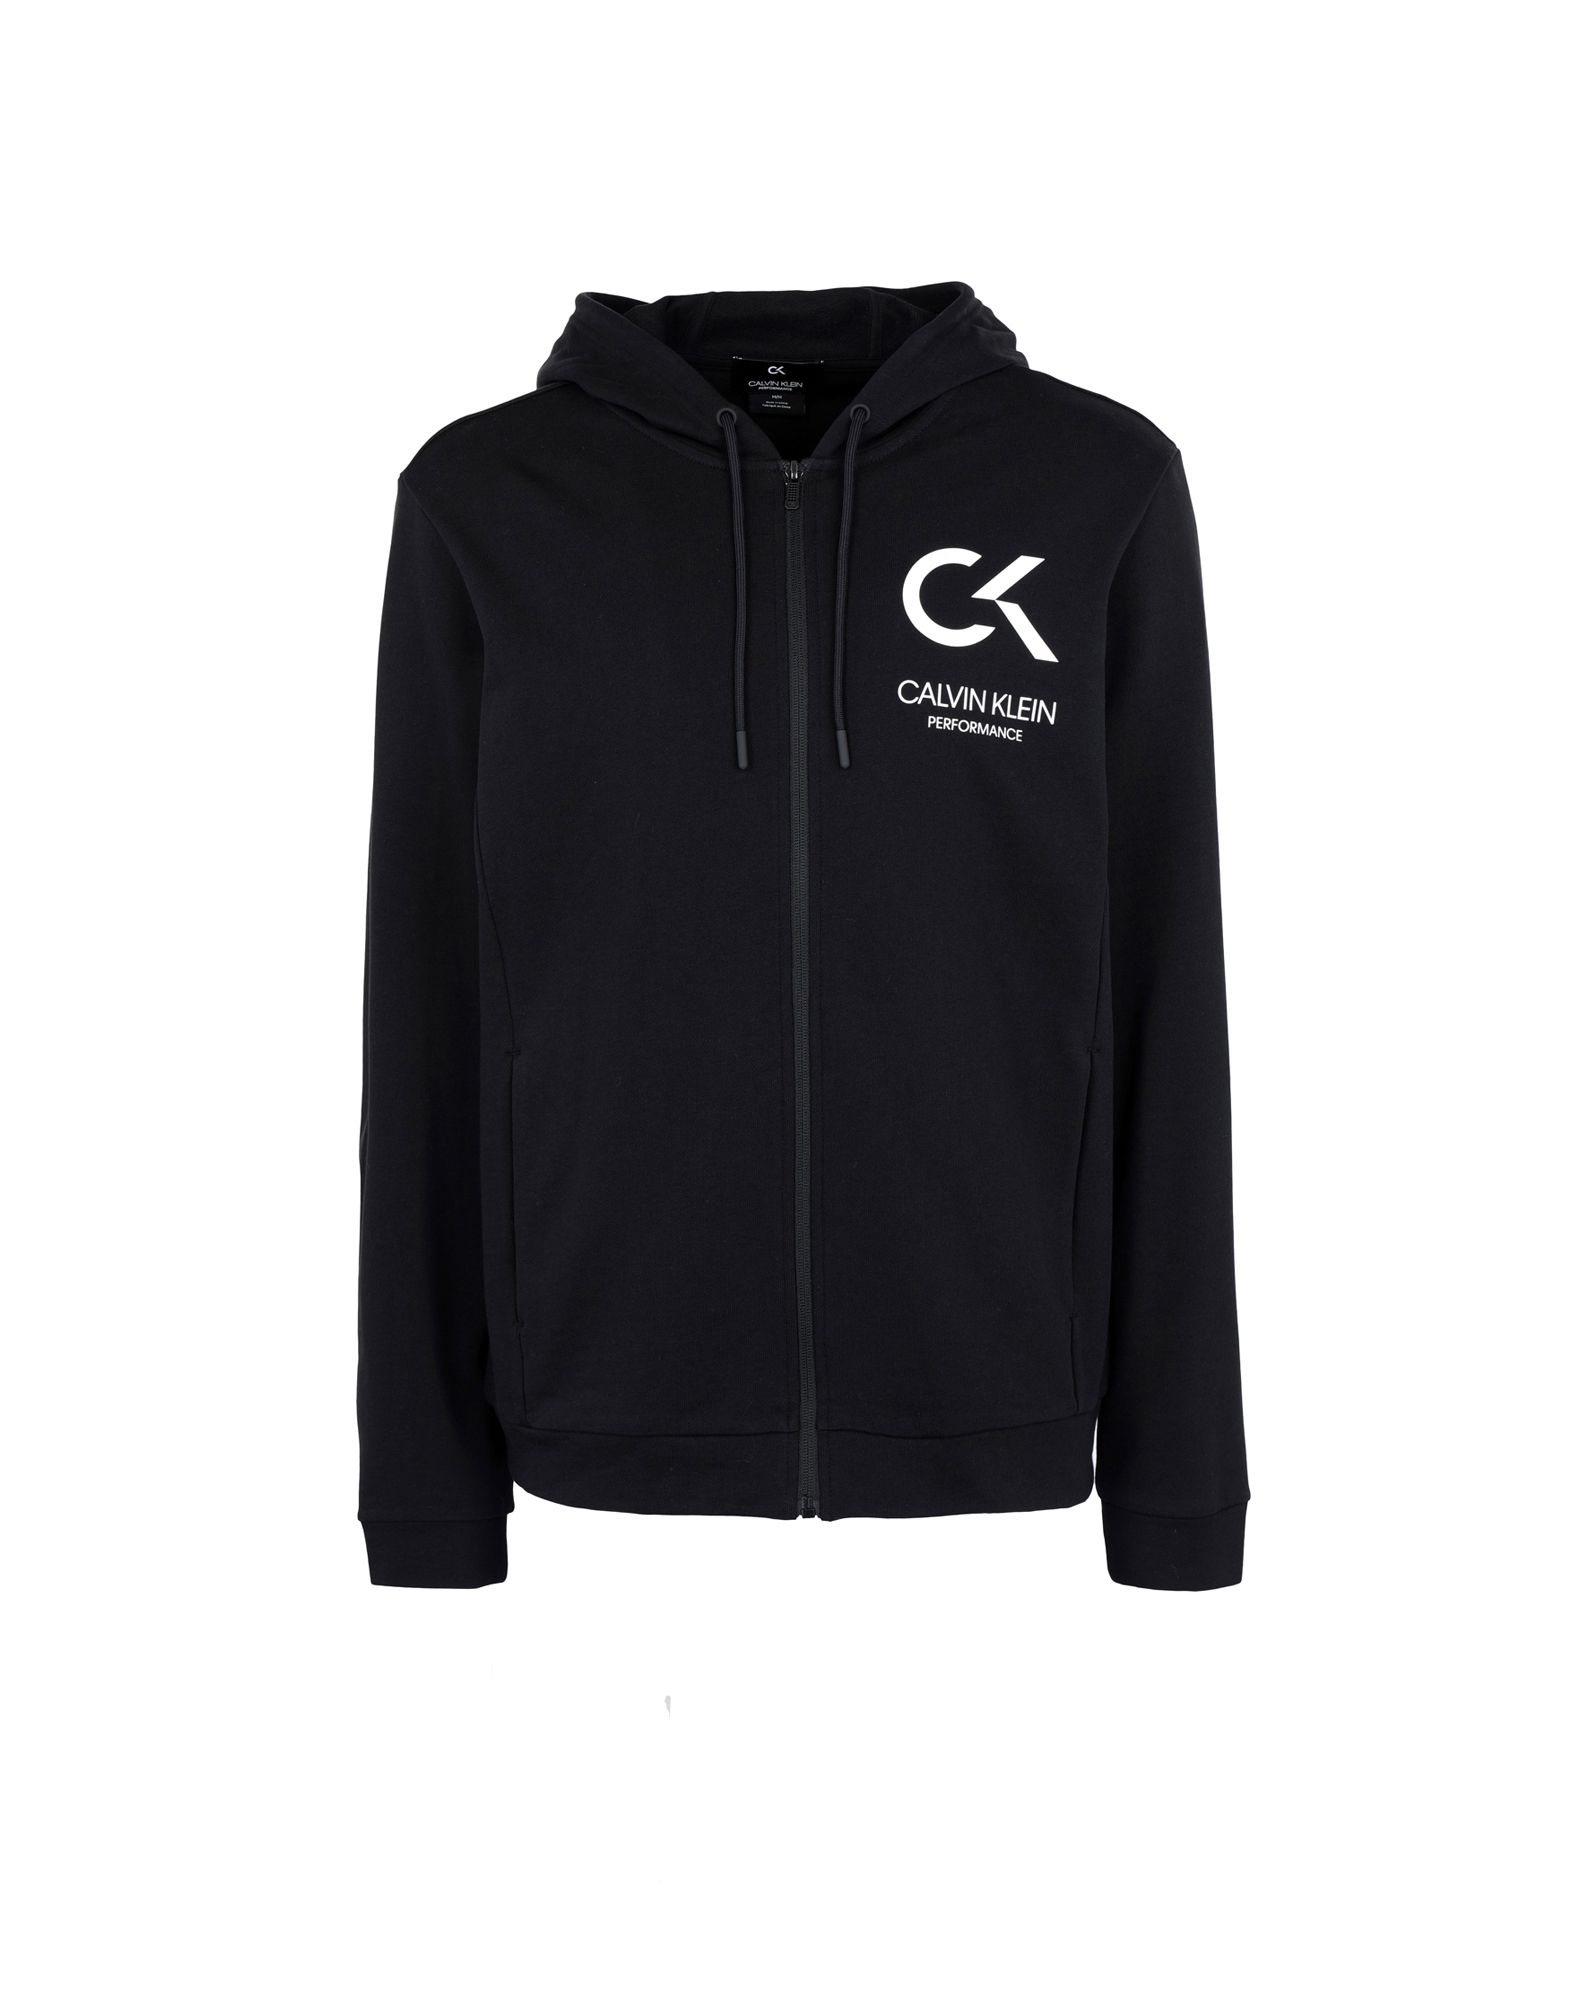 《送料無料》CALVIN KLEIN PERFORMANCE メンズ スウェットシャツ ブラック S コットン 100% fz hoody logo